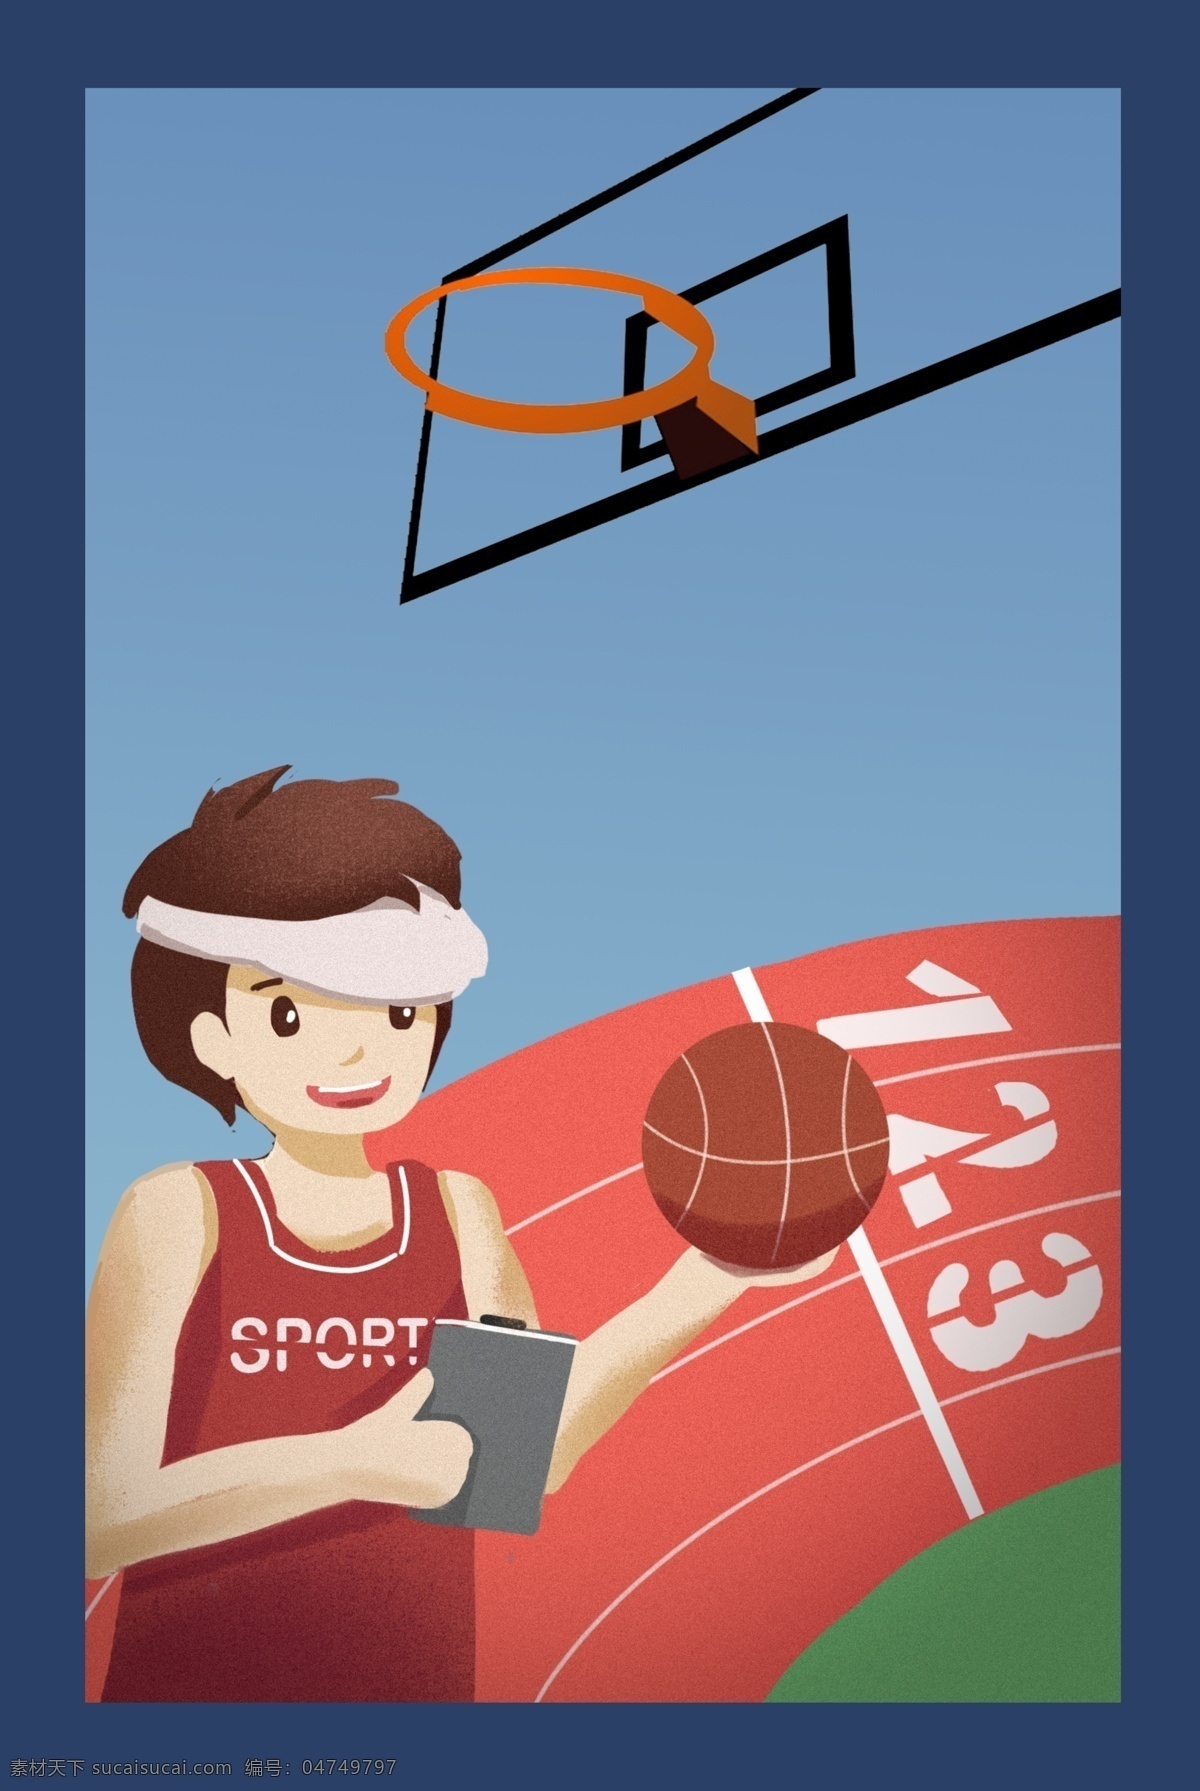 秋季 运动会 篮球 比赛 学校 宣传海报 背景 秋季运动会 学生篮球比赛 篮球场 操场 篮球架 教练 教育海报 宣传 手绘卡通